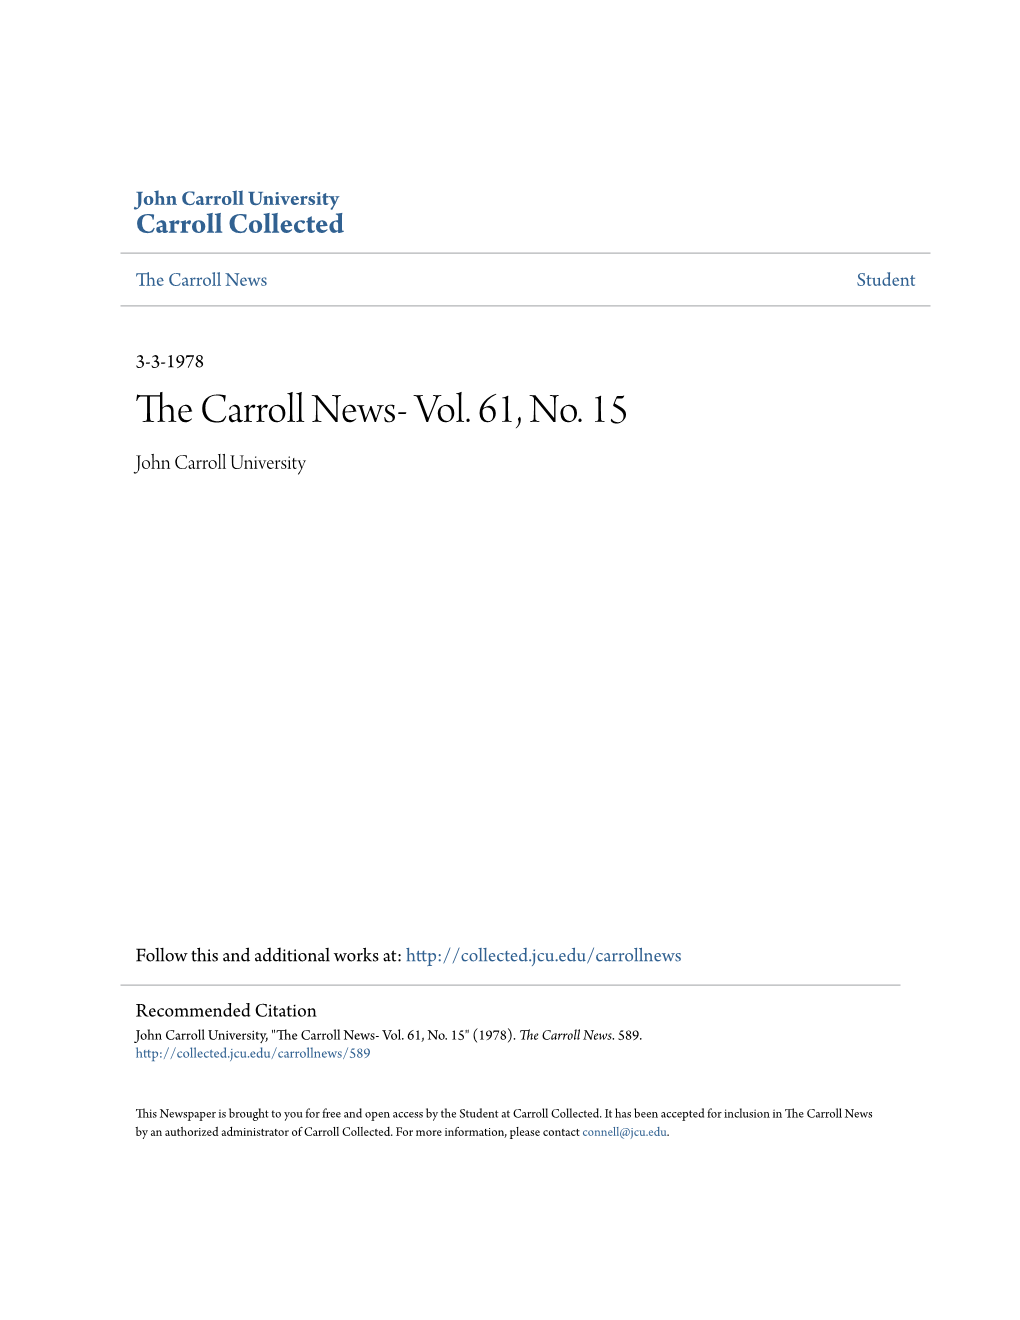 The Carroll News- Vol. 61, No. 15